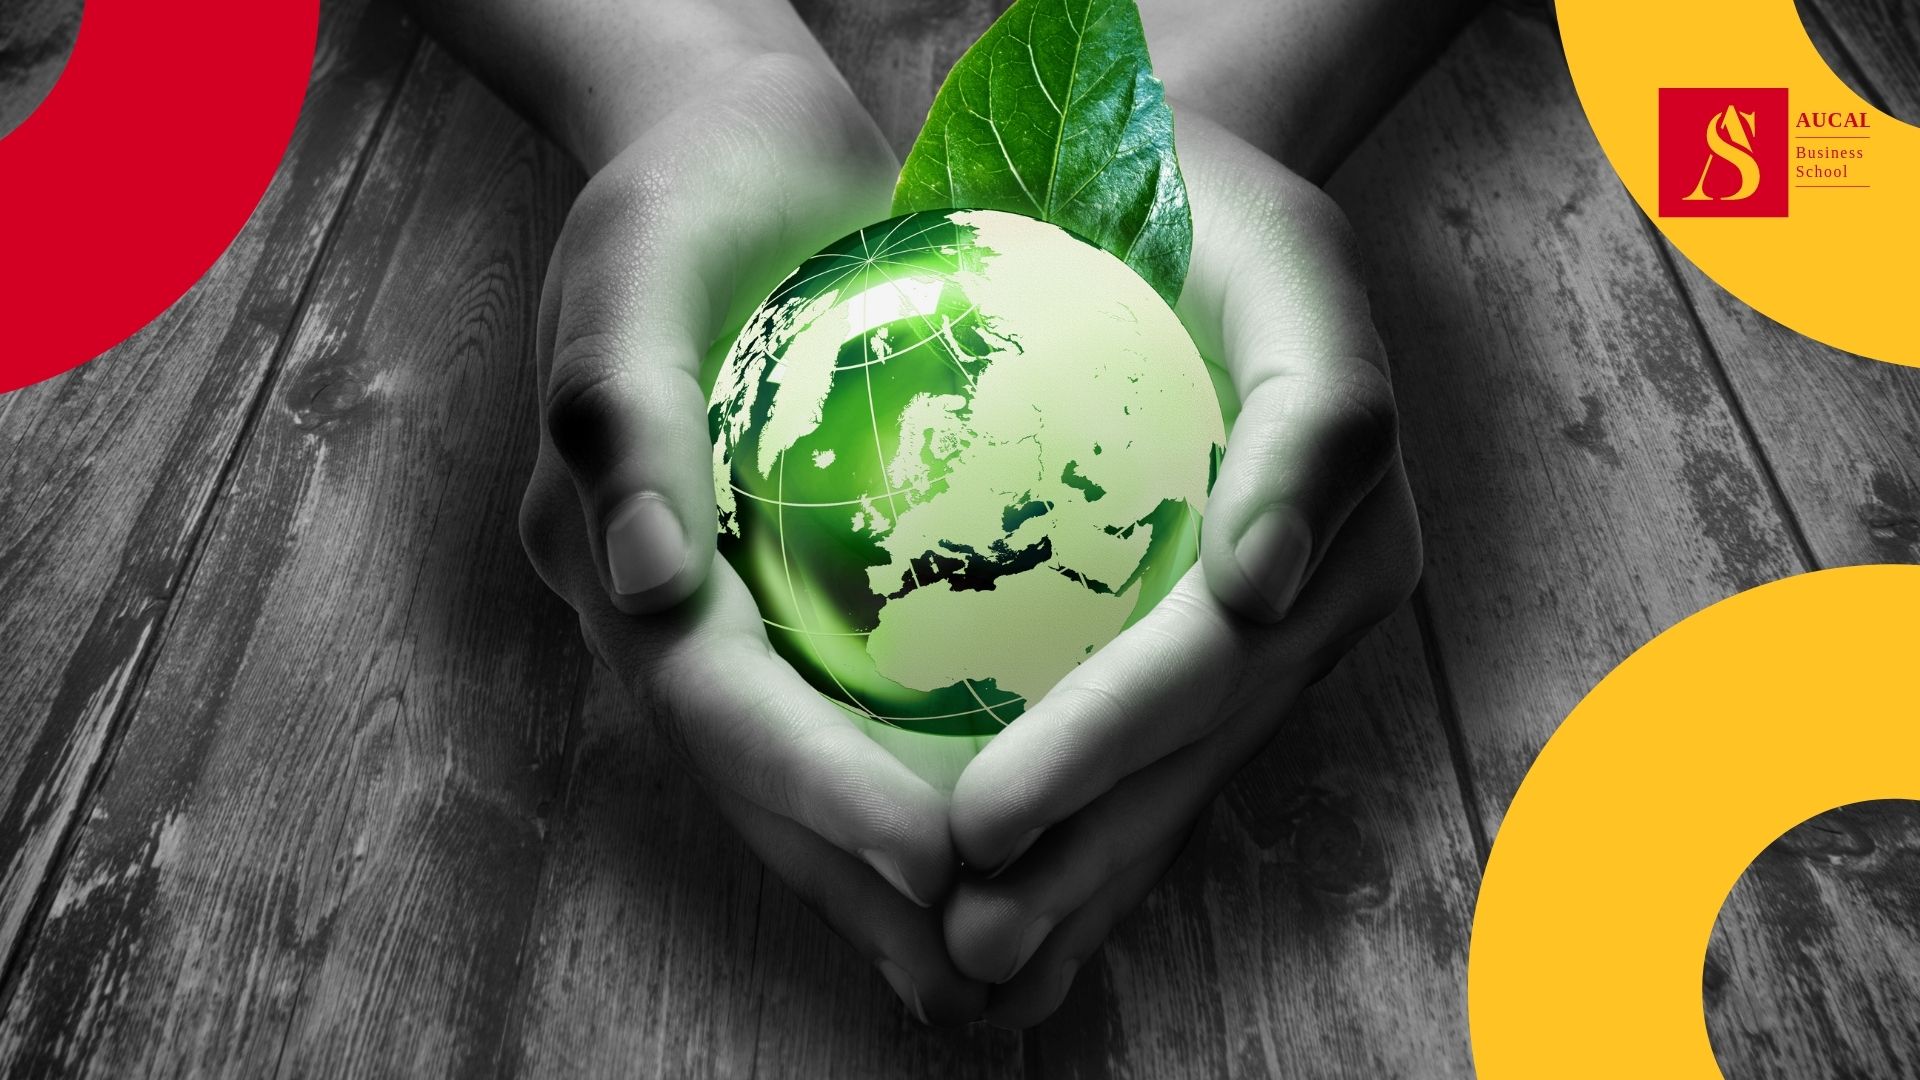 AUCAL Bussines School Blog Social 17avo Objetivo de los ODS: revitalizar la Alianza Mundial para el Desarrollo Sostenible